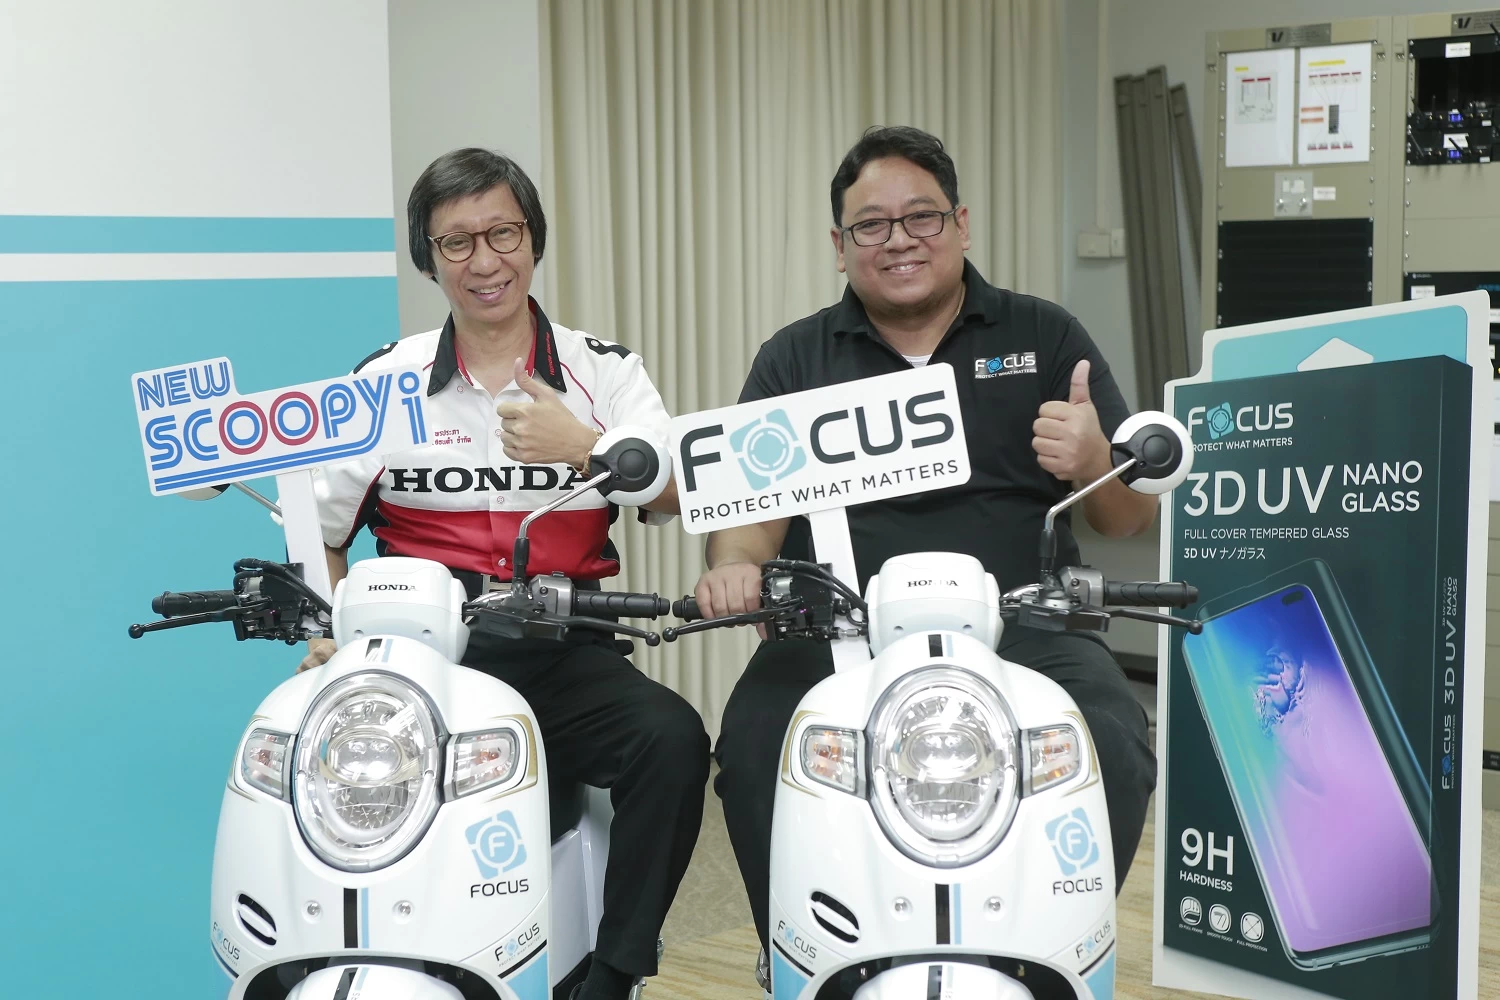 Focus x honda 5 | Focus ฟิล์มกันรอย | Focus จัดแคมเปญสุดพิเศษ “ติดโฟกัส ยิ่งทัช ยิ่งฟัน” เตรียมแจก Honda Scoopy i ลายพิเศษล็อตใหญ่